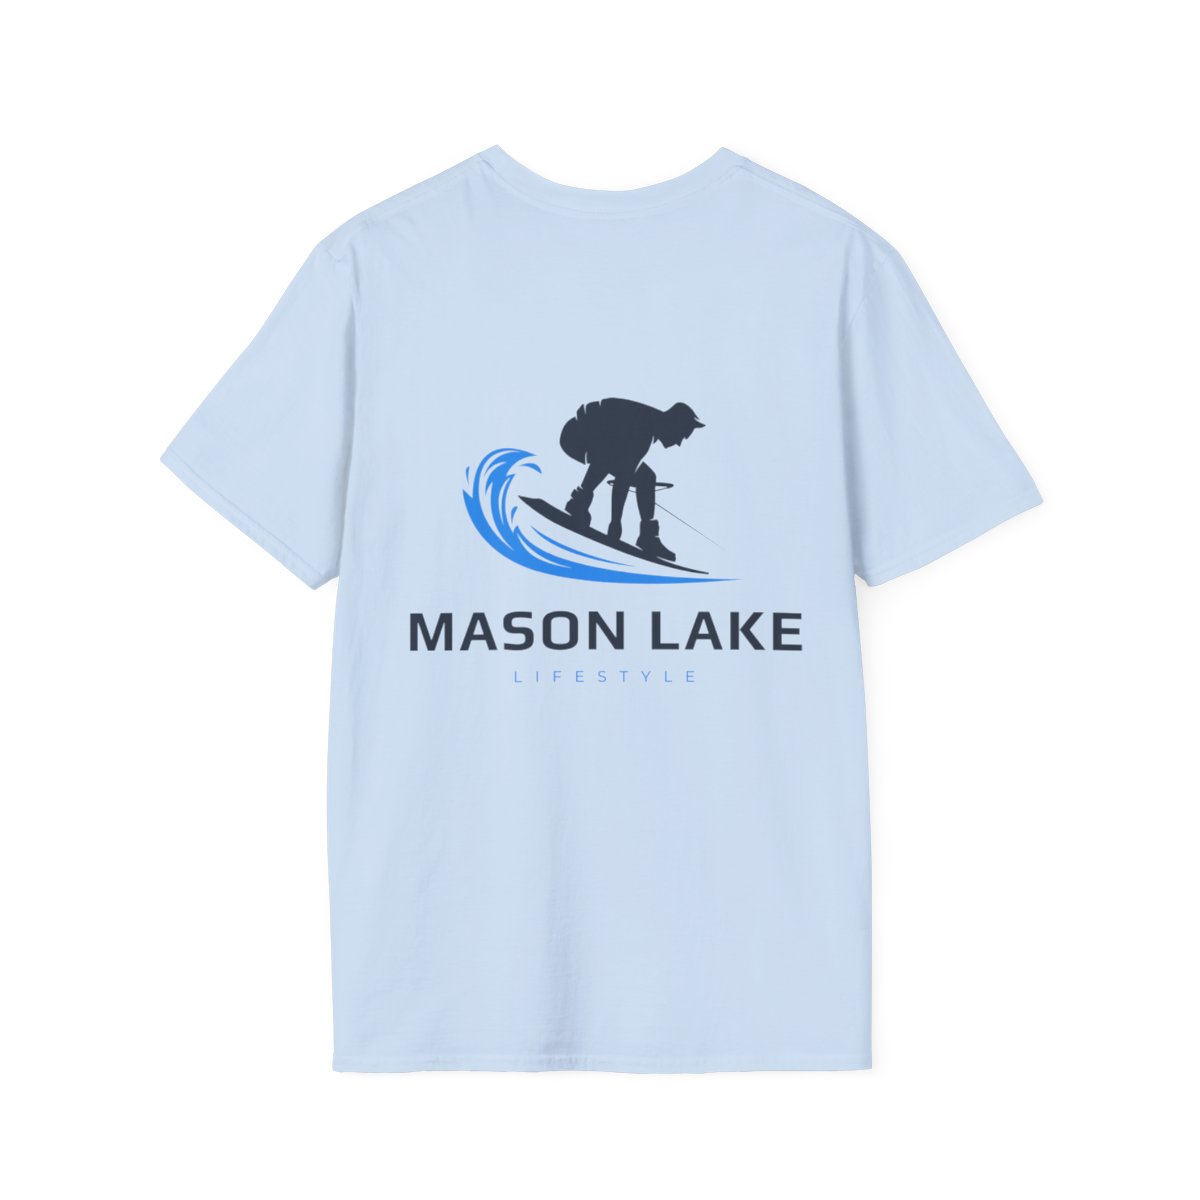 Mason Lake Wakeboarder Shirt product thumbnail image